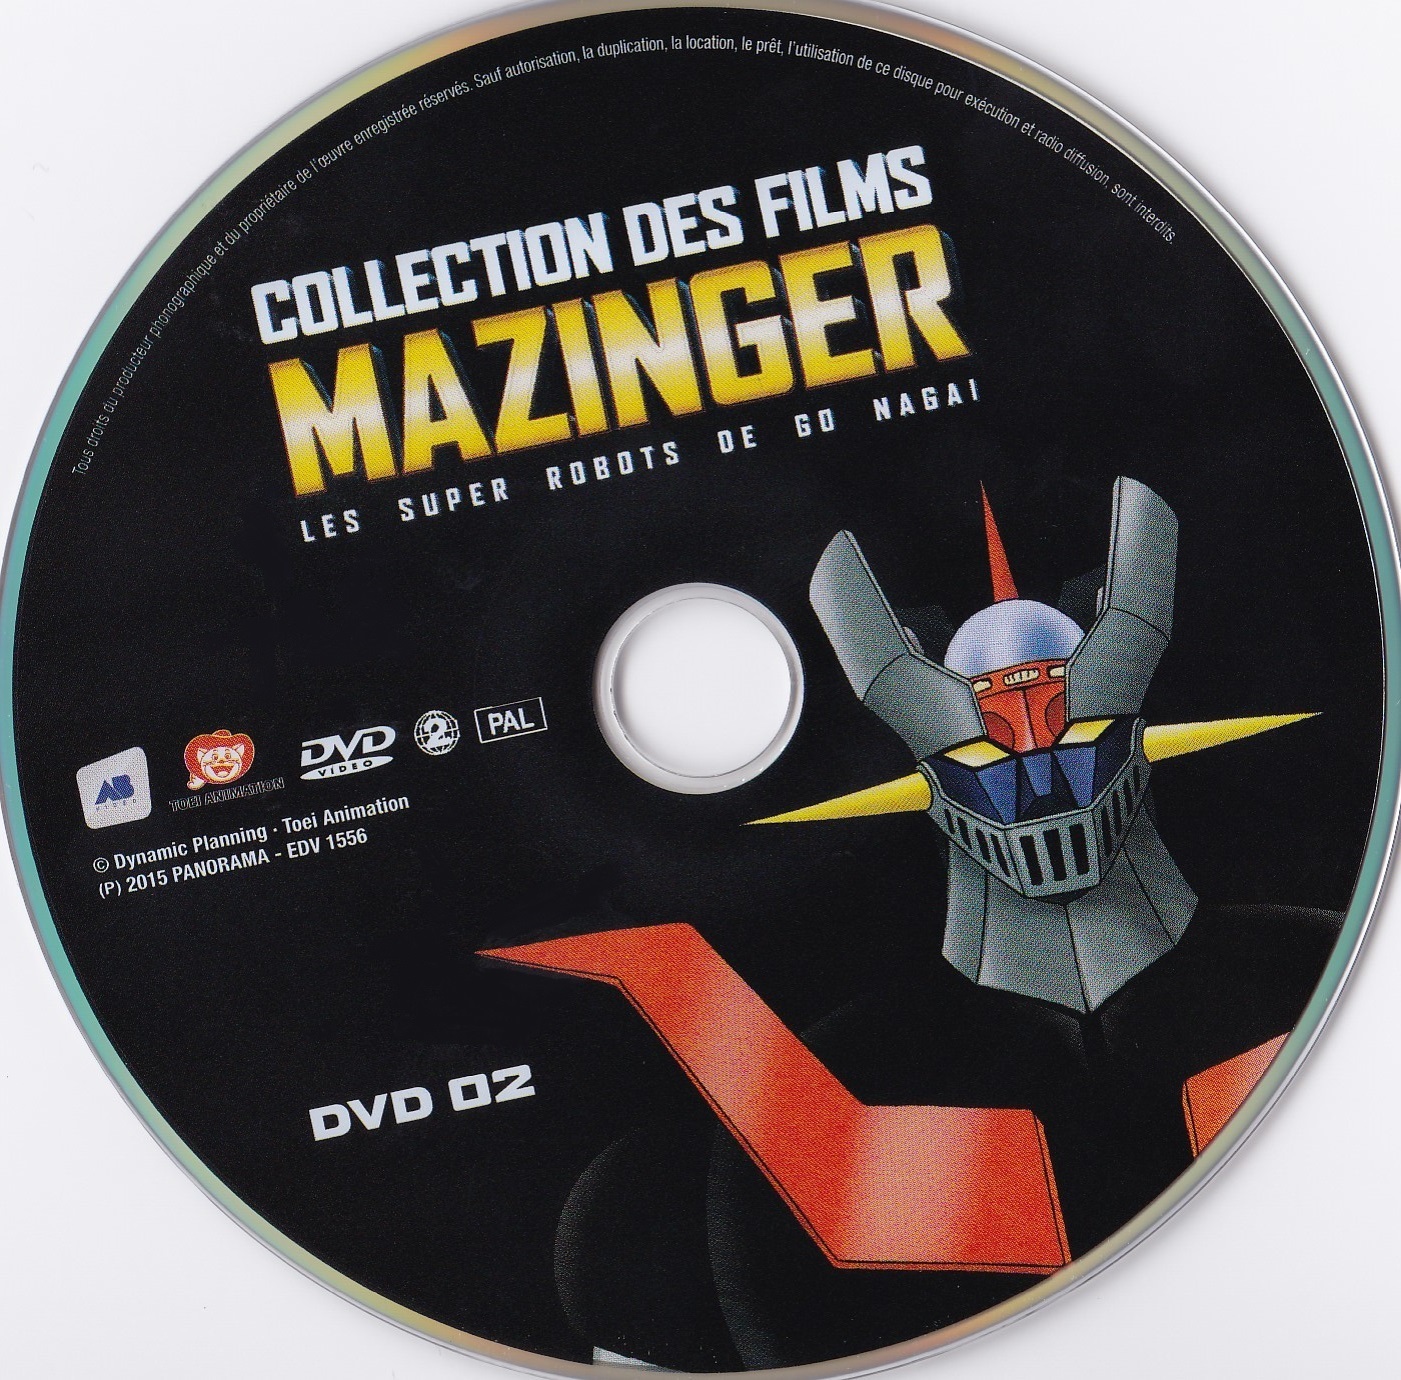 Collection des films Mazinger DISC 2